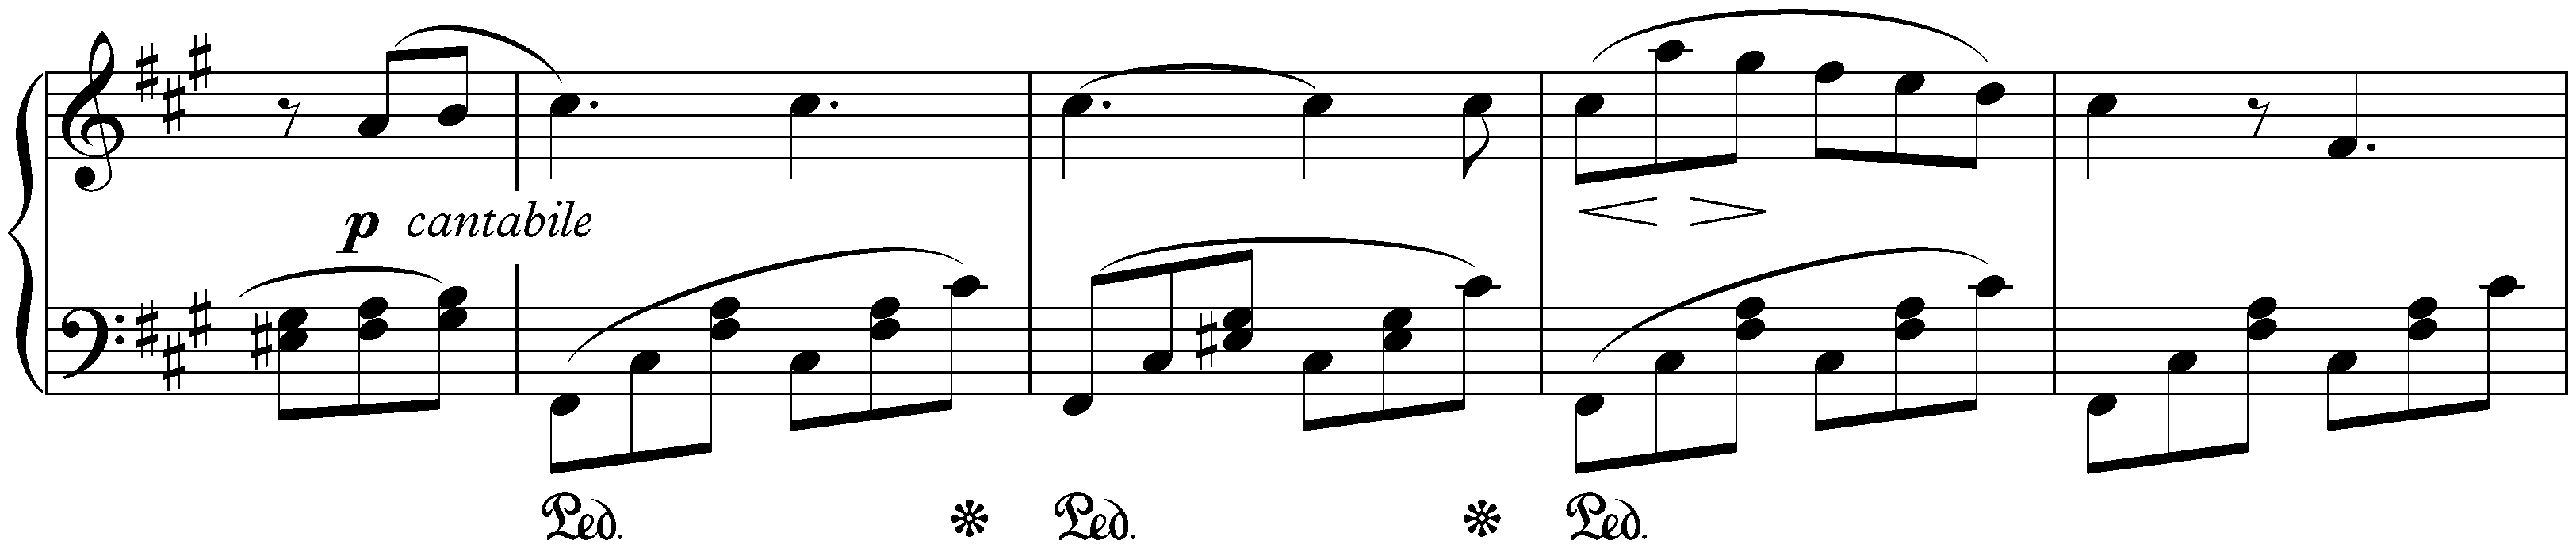 Lieder ohne Worte, Book 2, op. 30; 6. F-sharp minor (Venetianisches Gondellied)